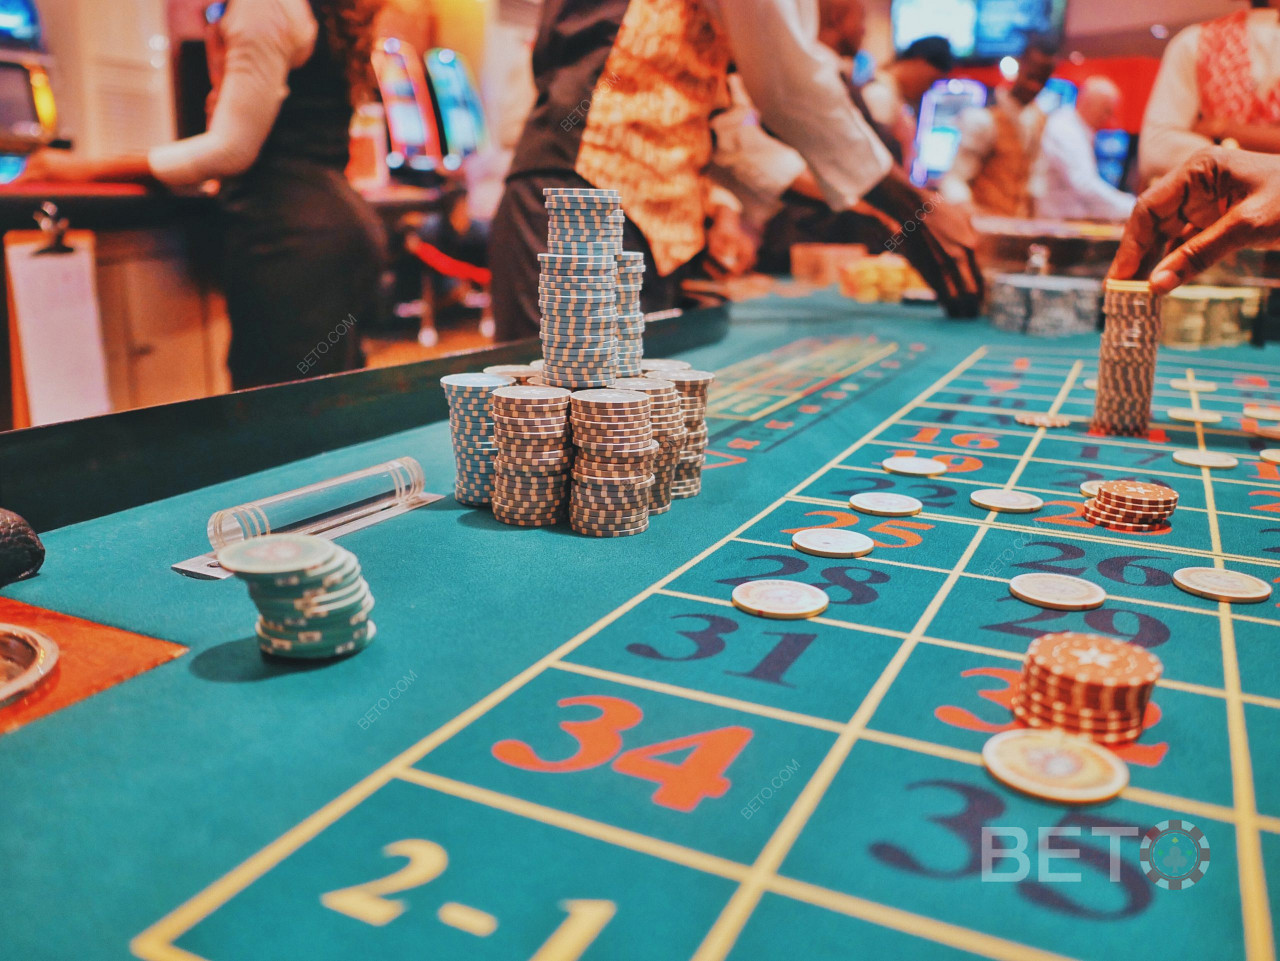 888 是市场上最好的赌场运营商之一。玩二十一点和其他游戏。